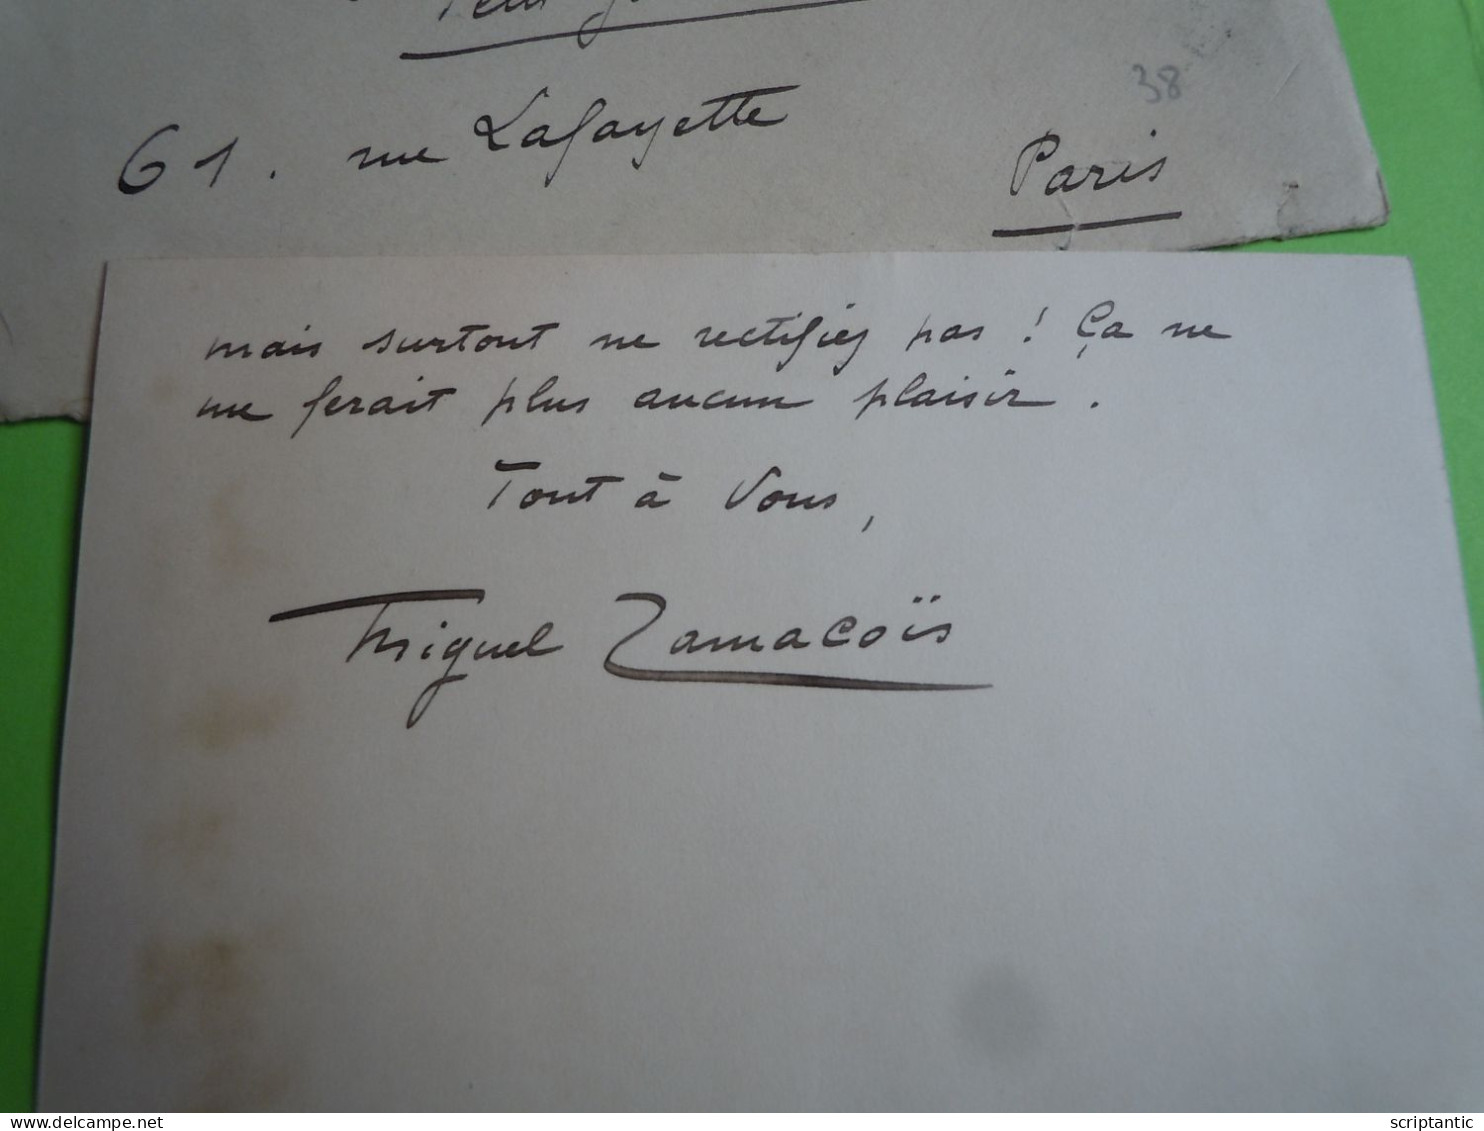 Carte Autographe Miguel ZAMACOIS (1866-1955) Romancier Poète Et Journaliste - LE FIGARO - A Louis ARTUS - Writers